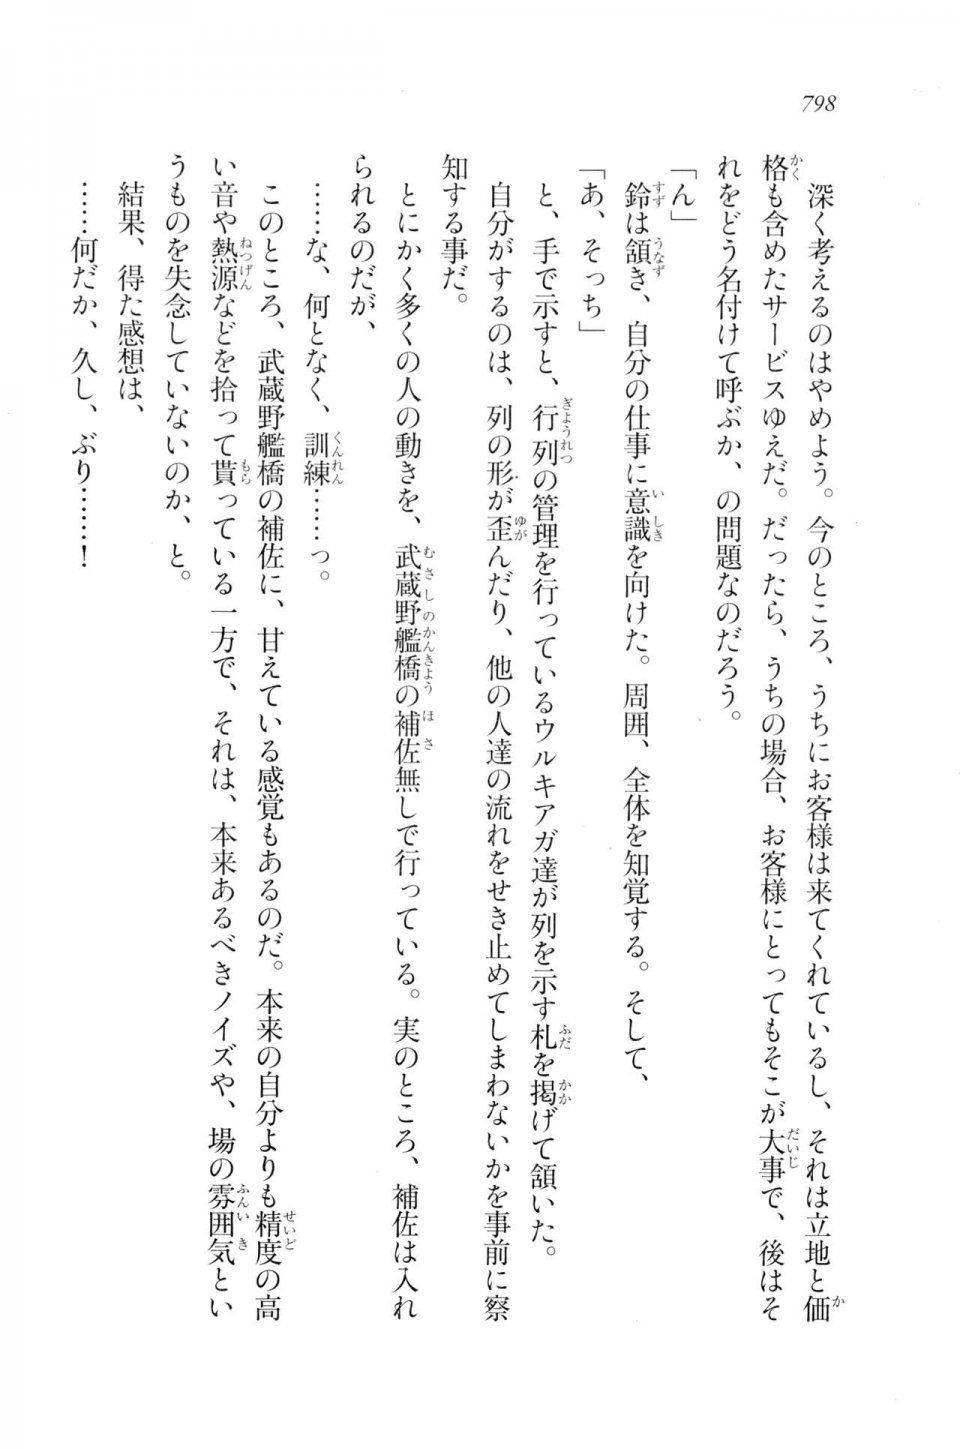 Kyoukai Senjou no Horizon LN Vol 20(8B) - Photo #798